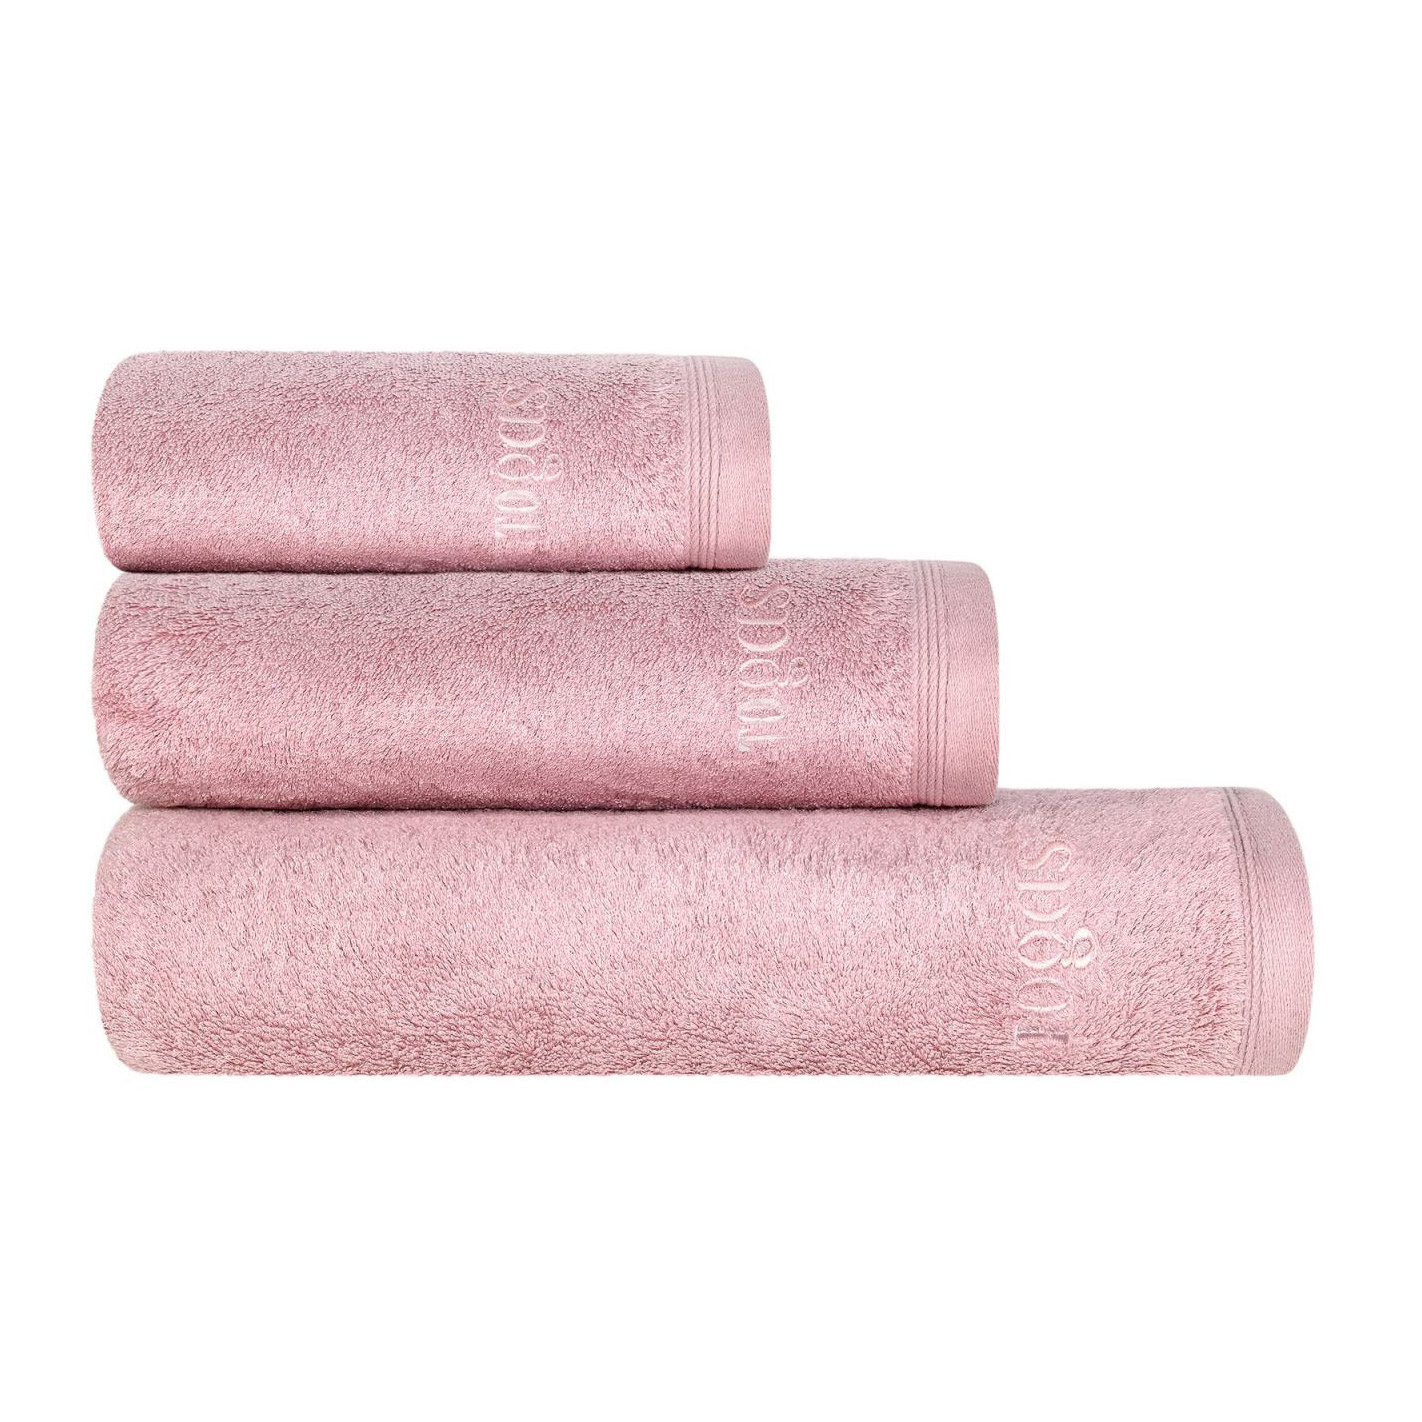 Полотенце Togas Пуатье розовое 50х100 см (10.00.01.1045) полотенце togas пуатье экру 100х150